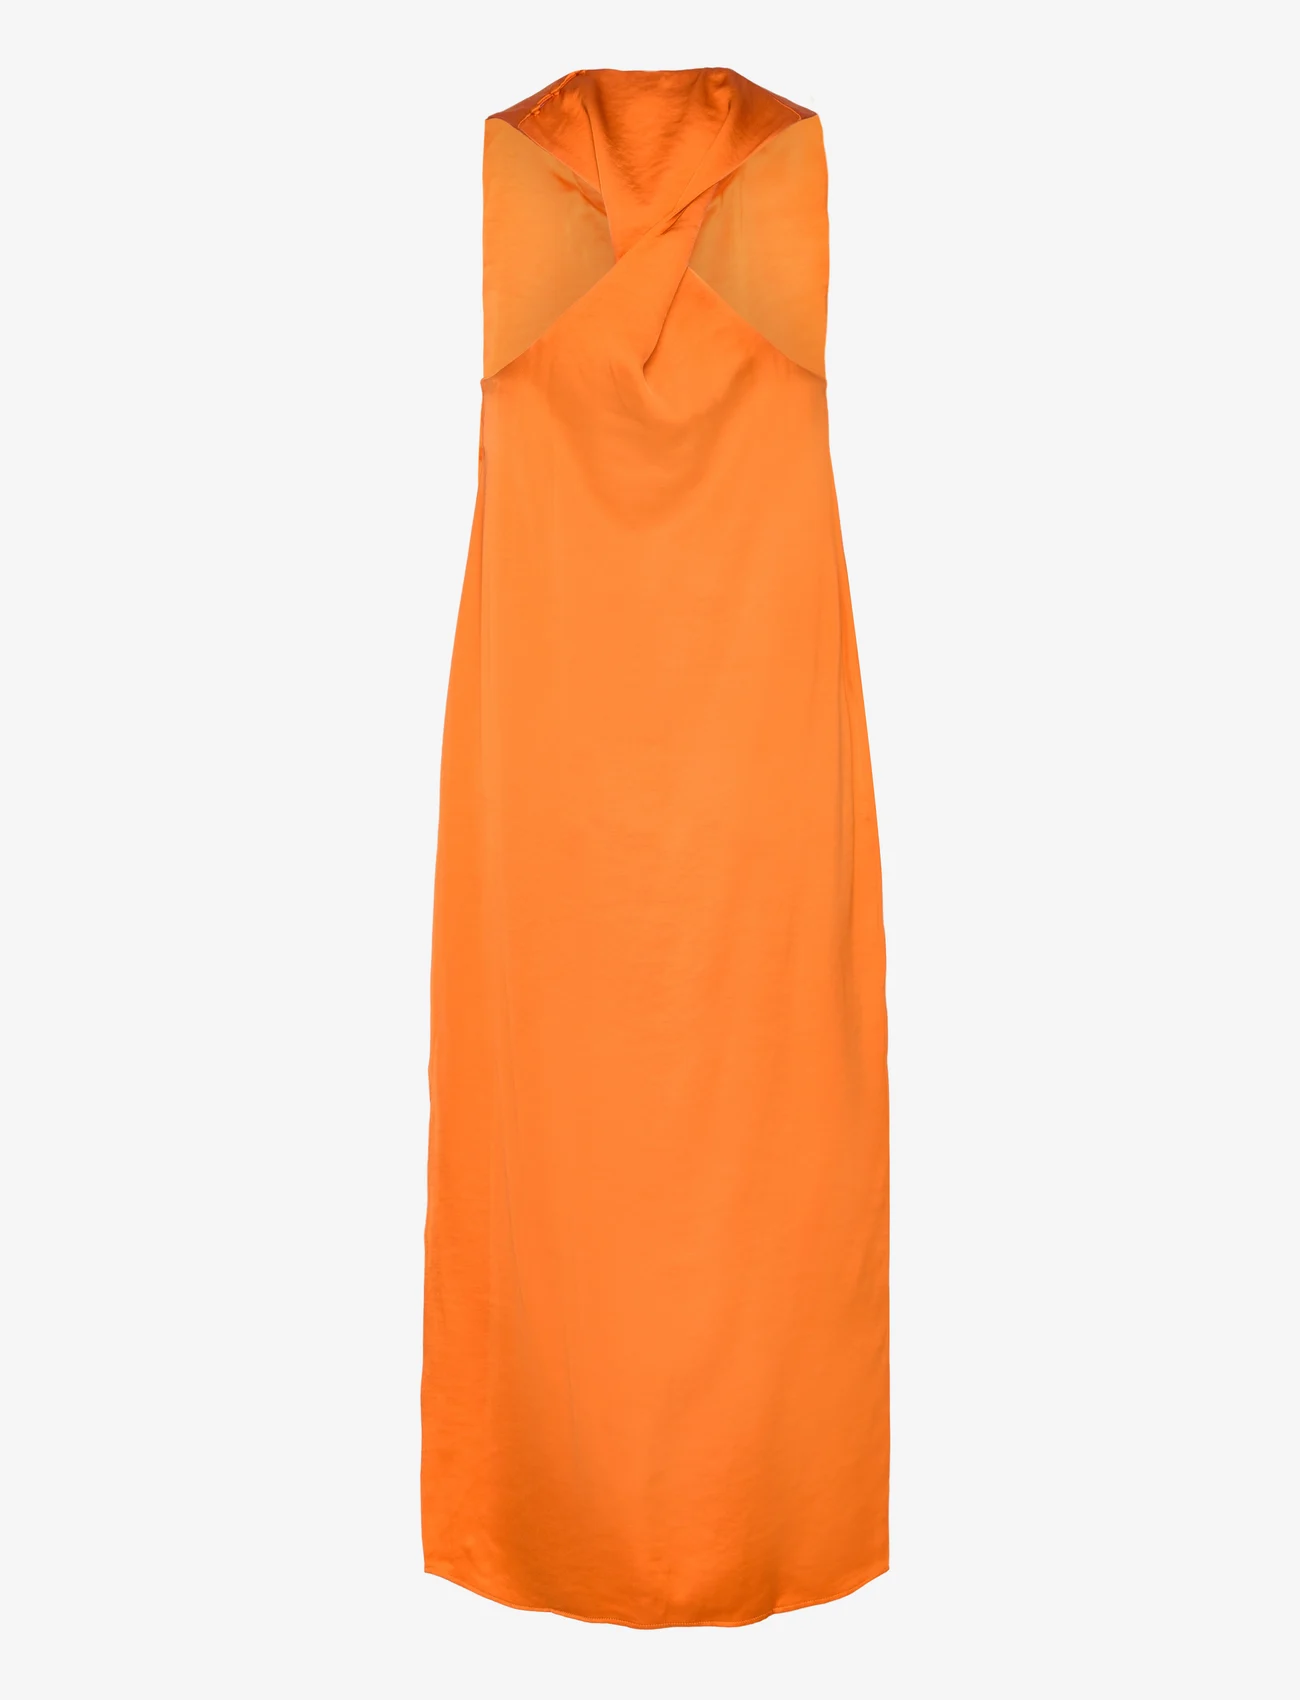 Samsøe Samsøe - Ellie dress 14773 - odzież imprezowa w cenach outletowych - russet orange - 1